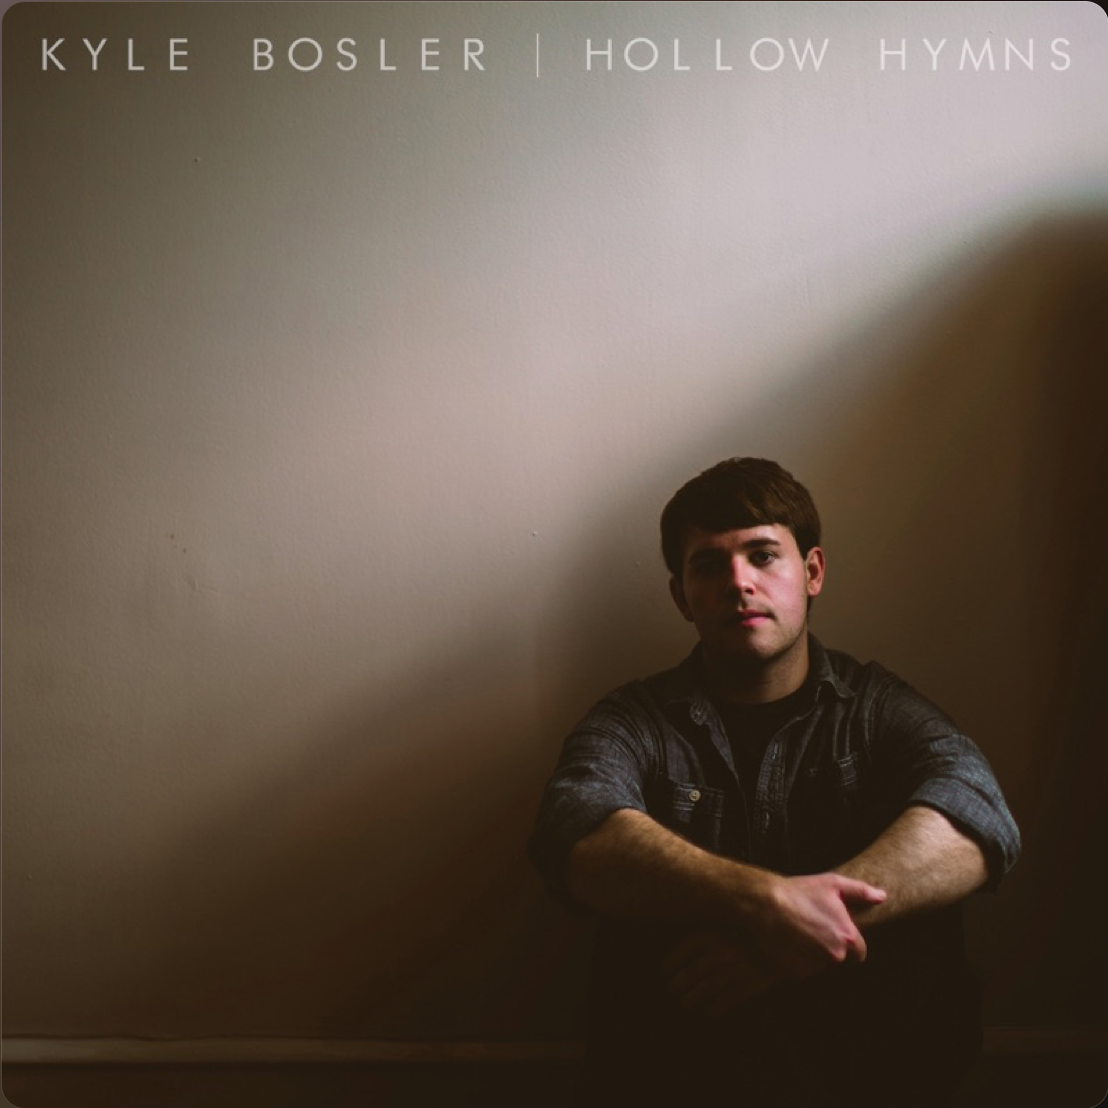 Kyle Bosler "Hollow Hymns" 